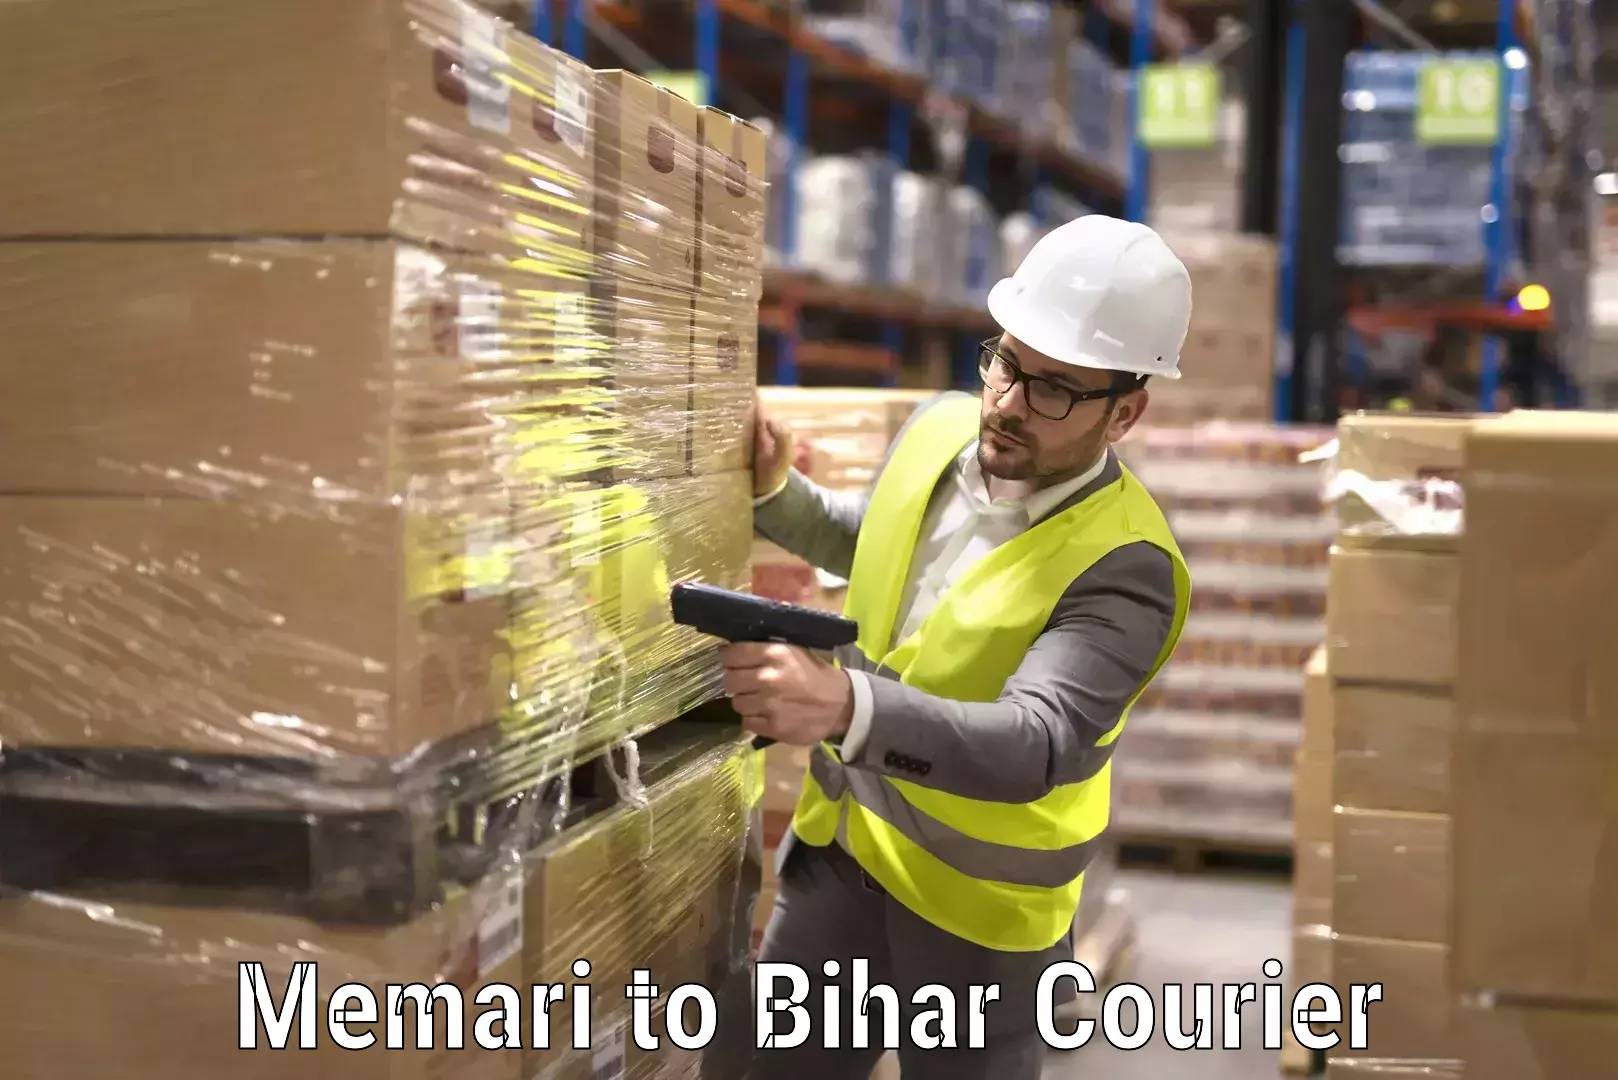 Specialized moving company Memari to Bihar